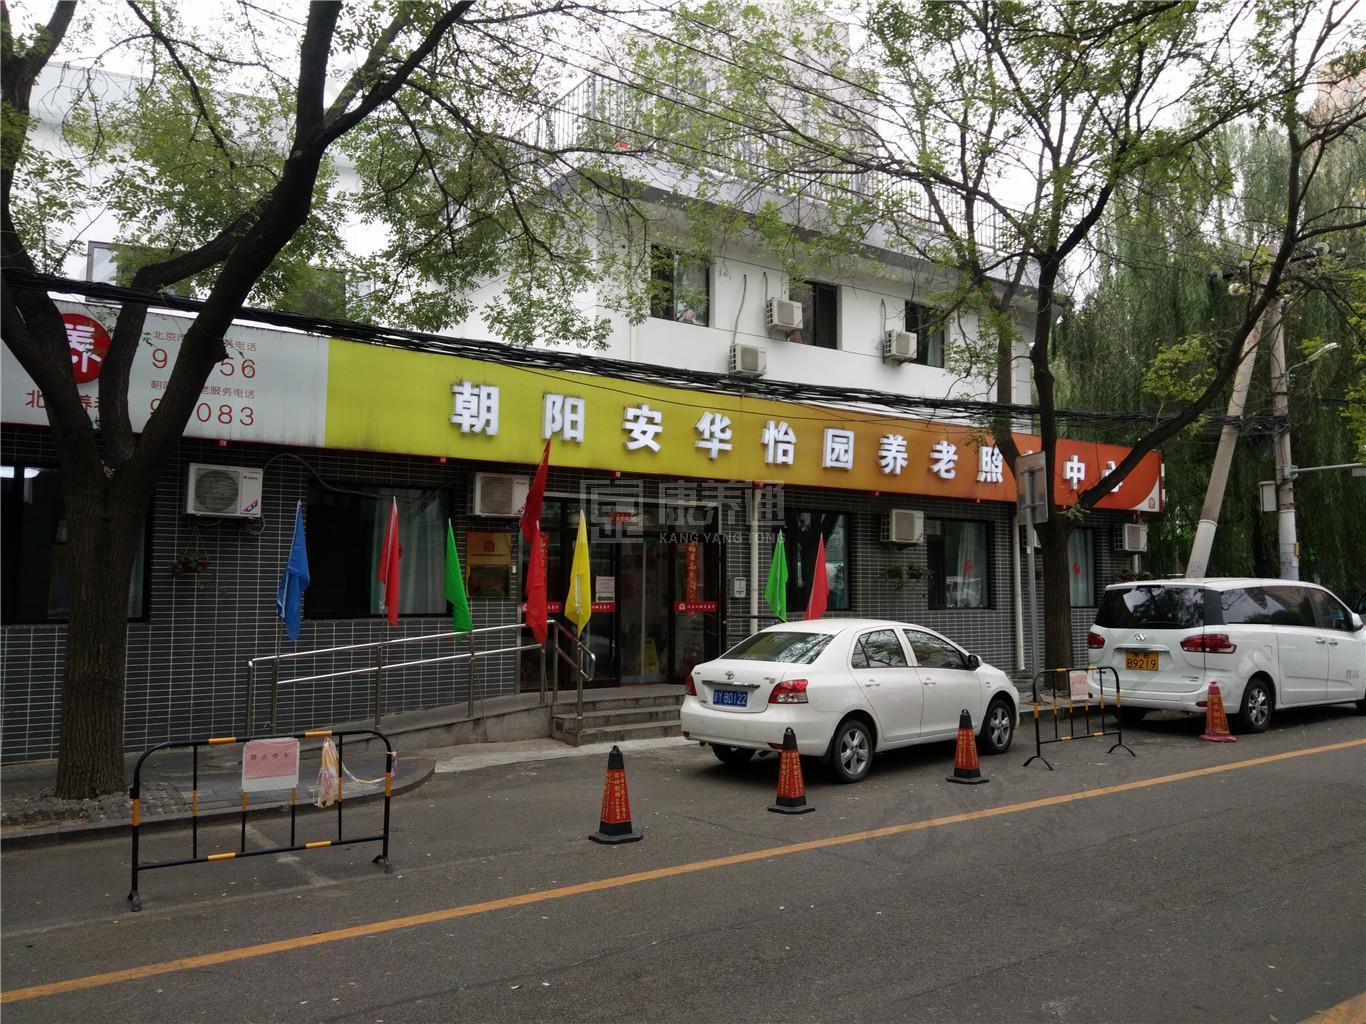 北京市朝阳区安华怡园养老照料中心服务项目图4让长者主动而自立地生活